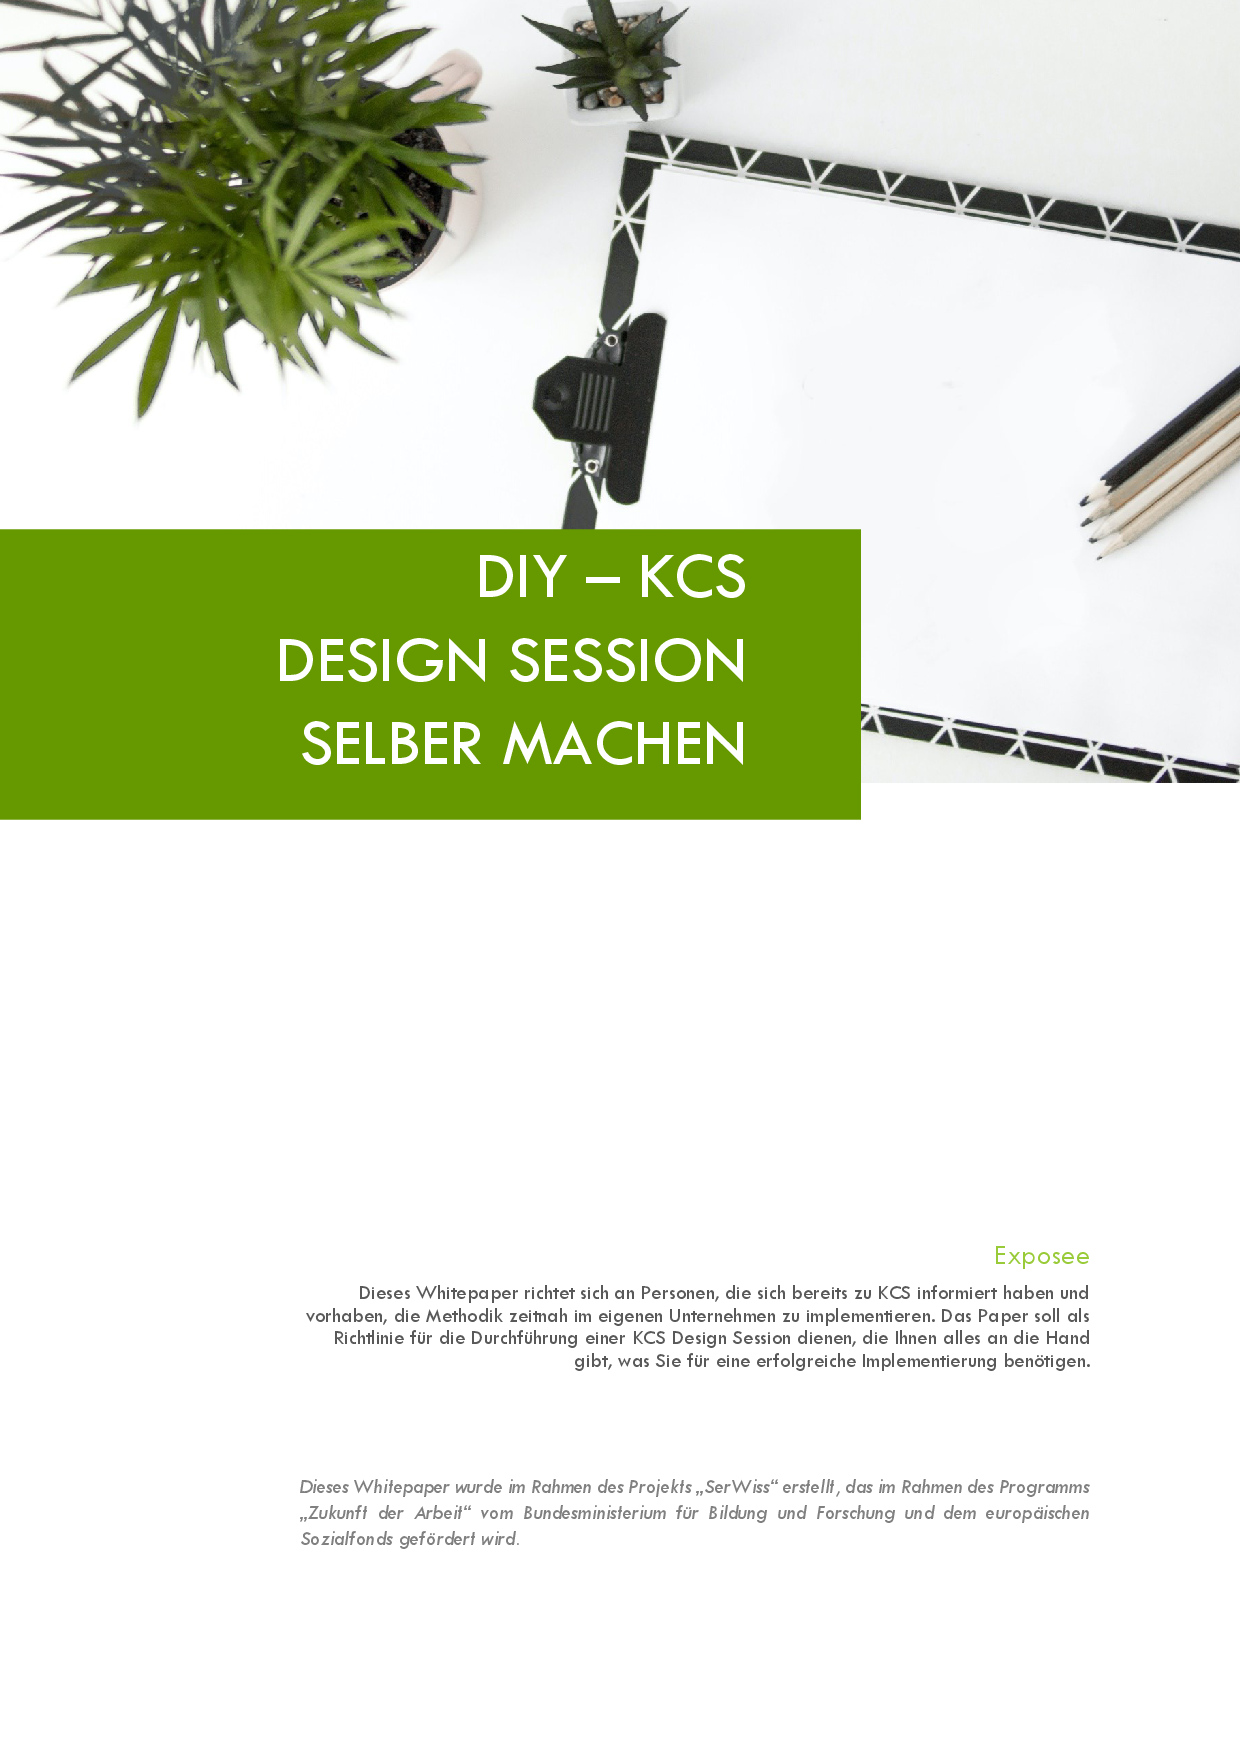 DIY - KCS®Design Session selber machen